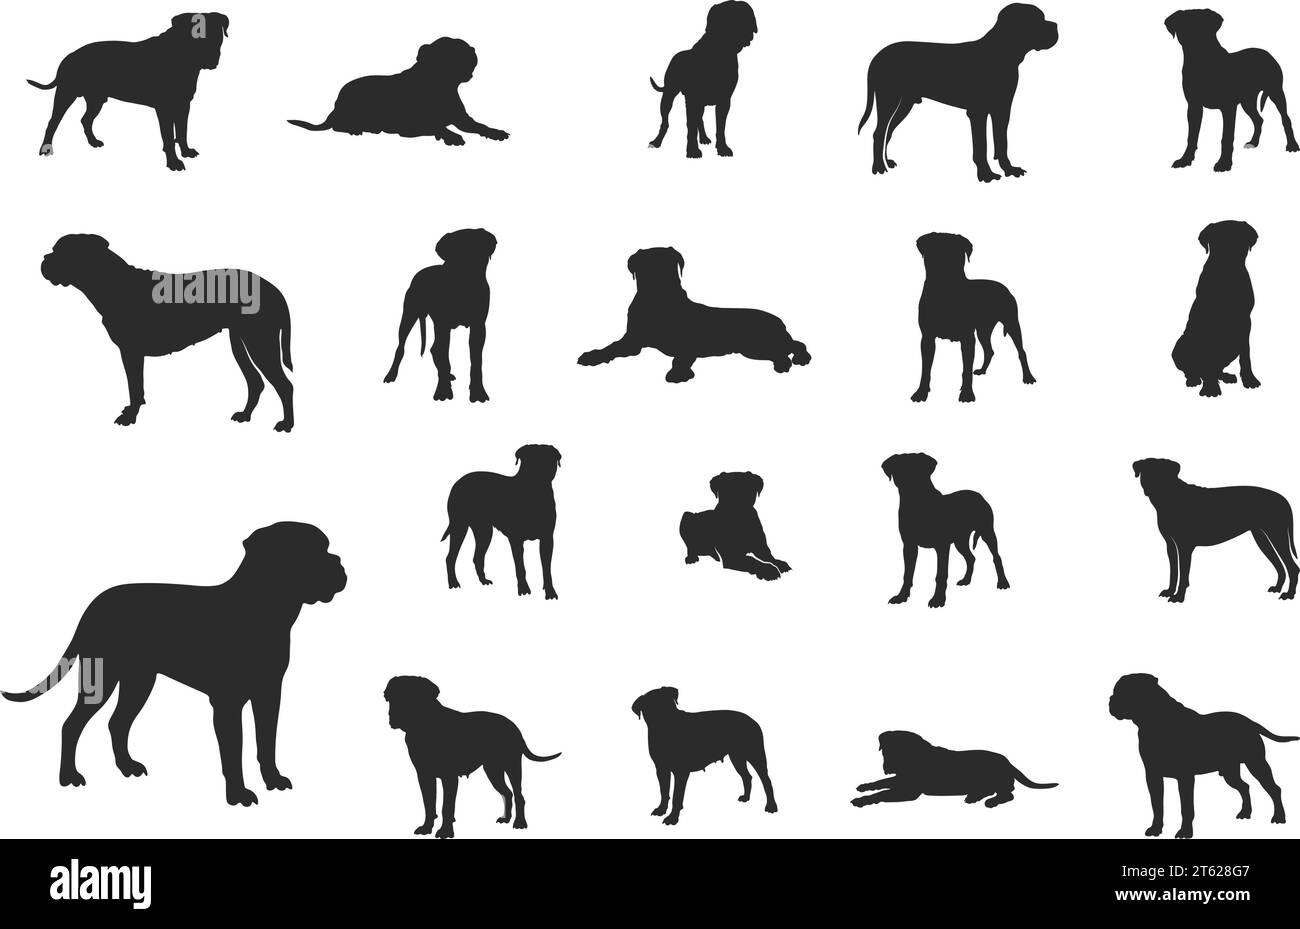 Bullmastiff dog silhouette, Bullmastiff dog svg, Bull mastiff silhouettes, Dog silhouettes, Bullmastiff clip art Stock Vector